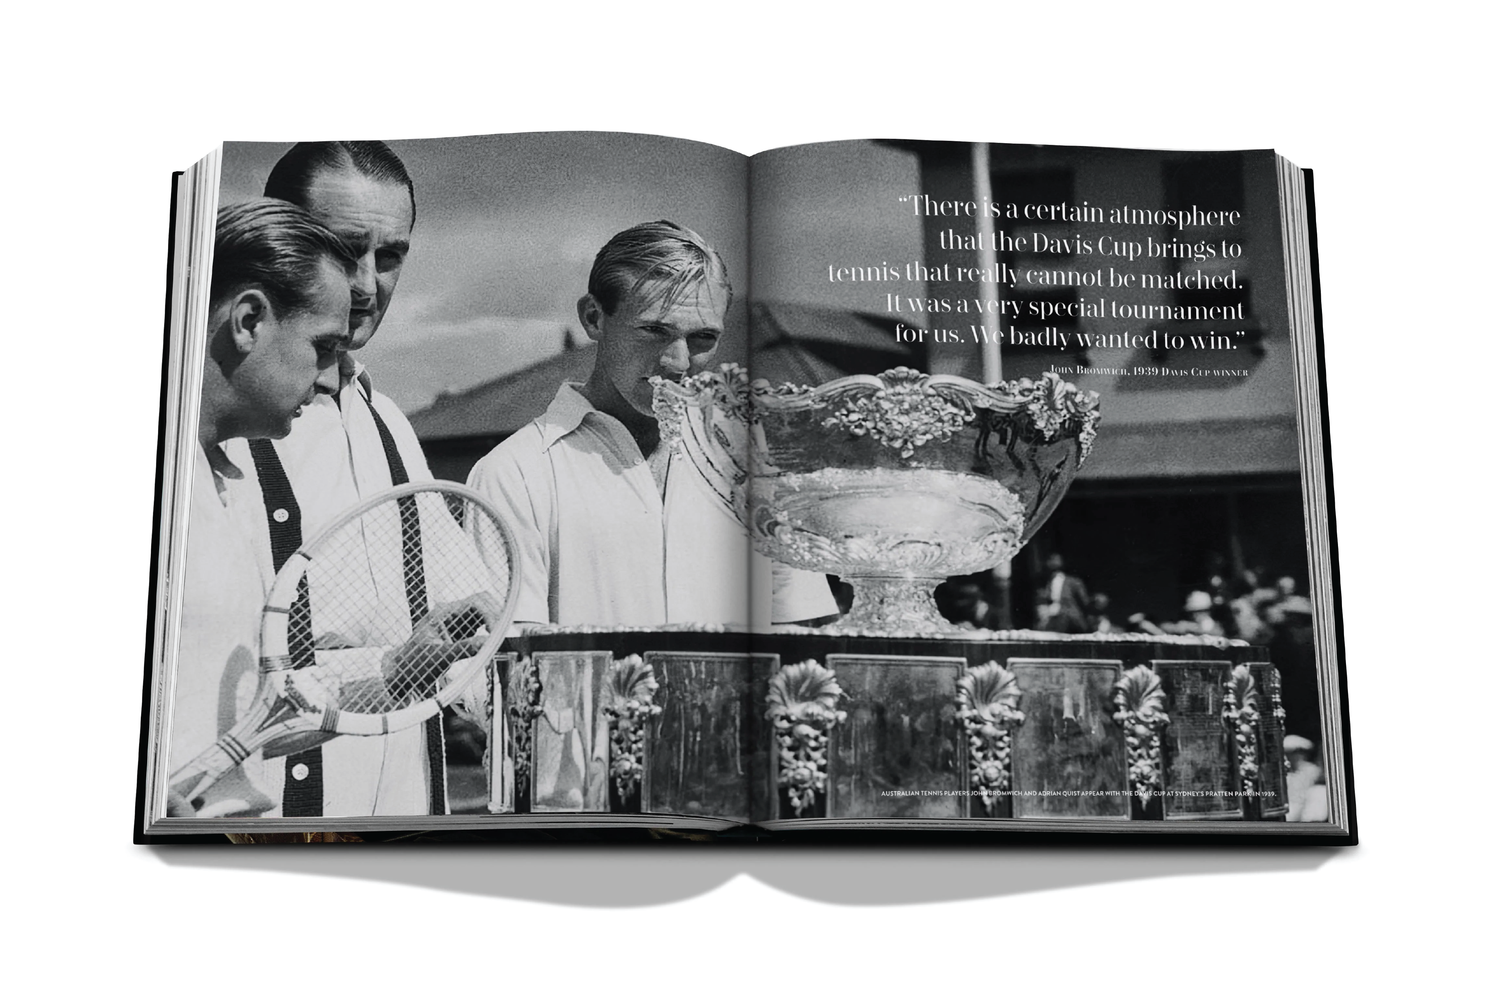 ASSOULINE Louis Vuitton: Trophy Trunks – Wynn at Home